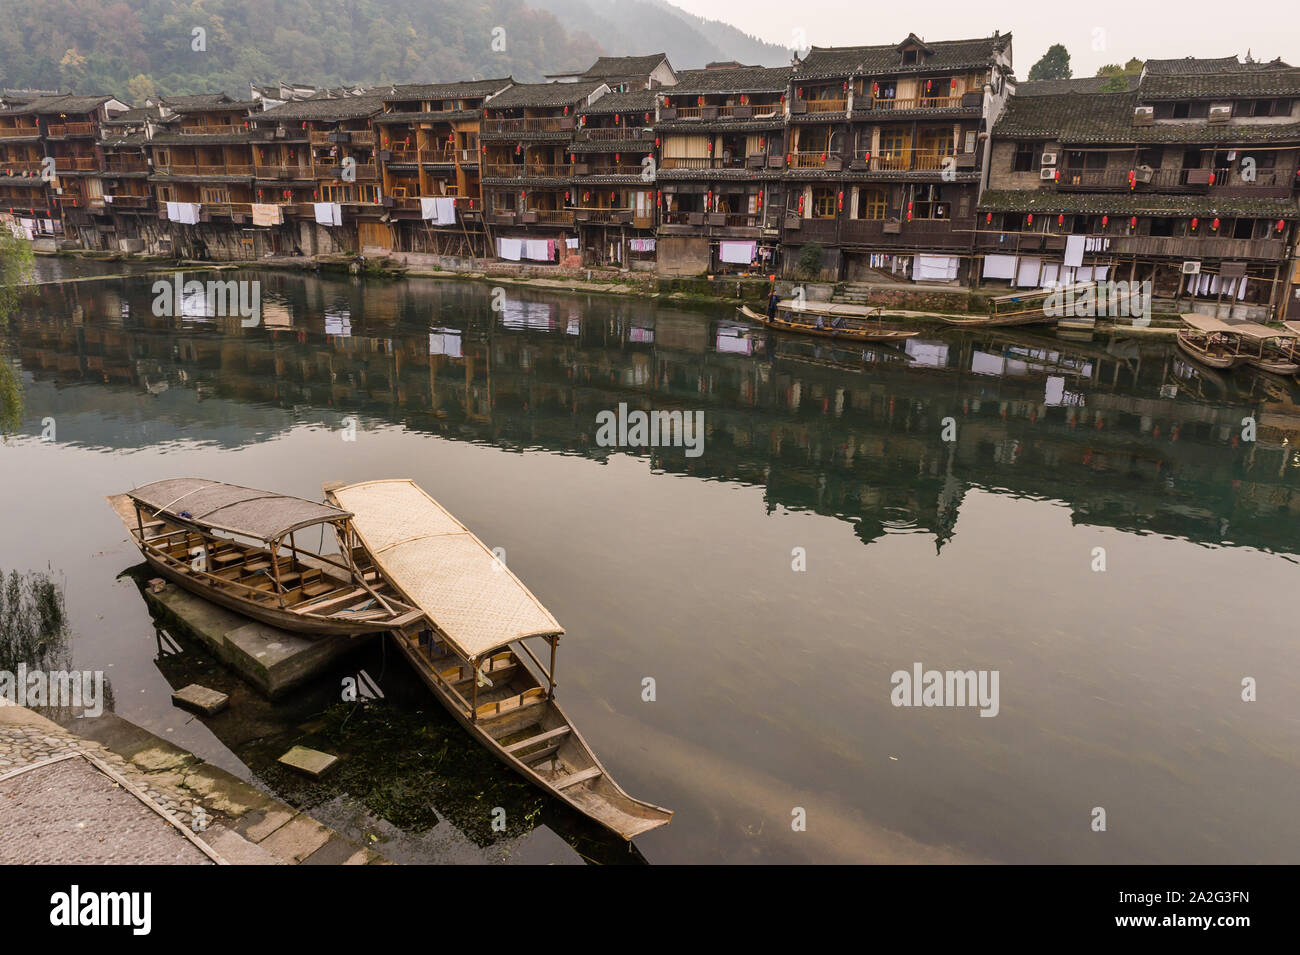 Hunan, Cina, 14 Nov 2011: uno splendido scenario di monumenti storici in città antica. Foto Stock